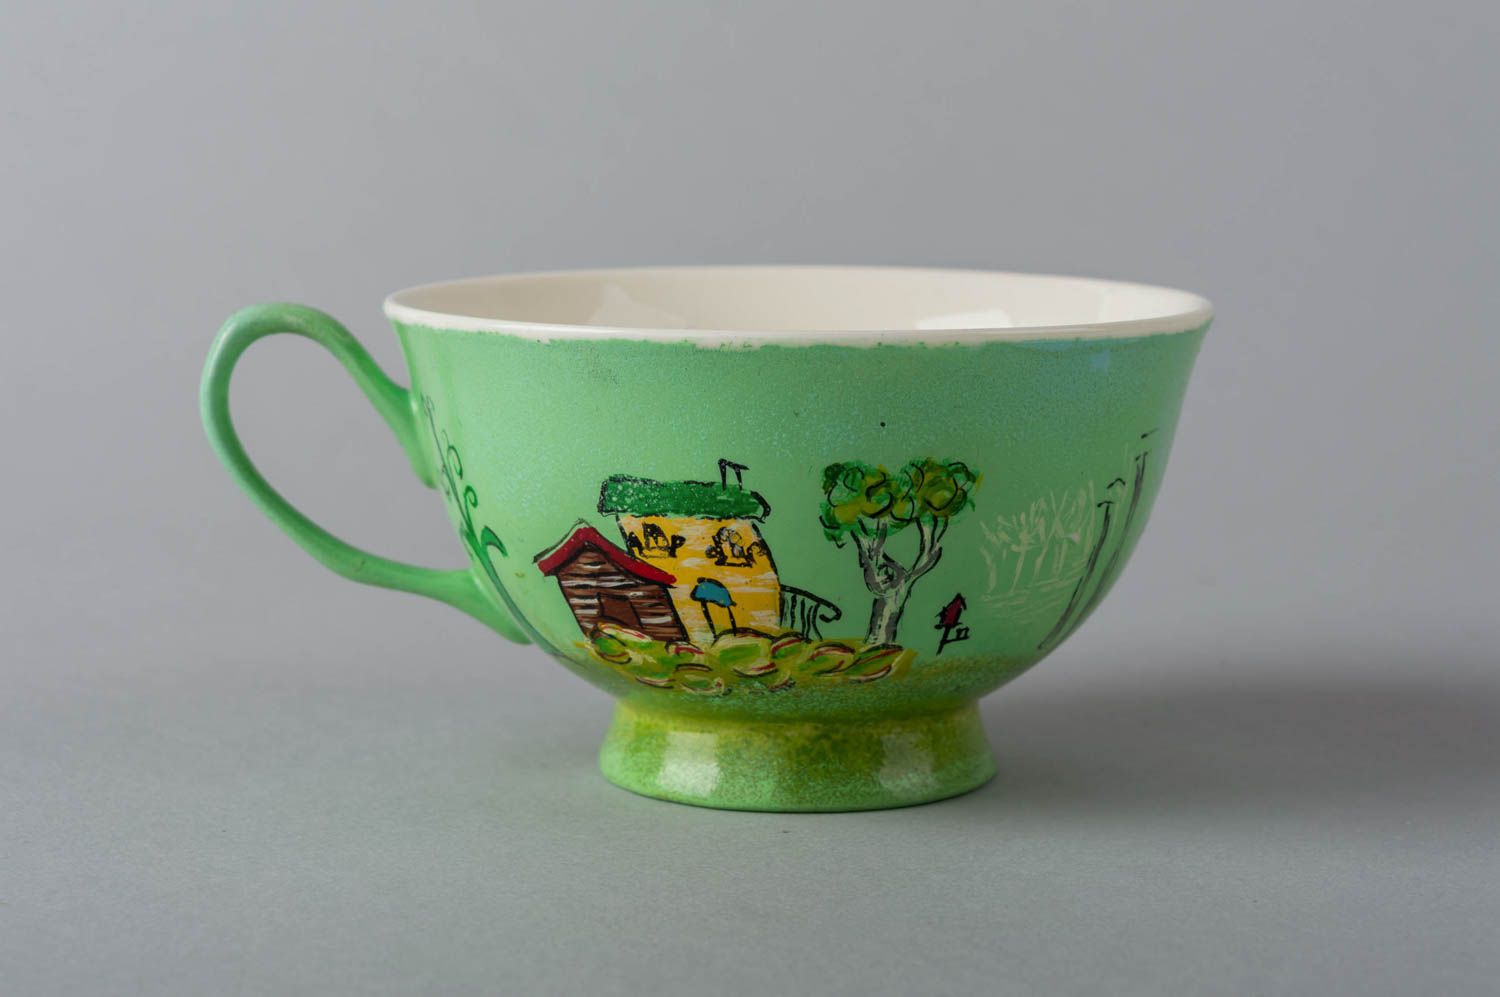 Handmade Tasse mit Untertasse Keramik Geschirr künstlerische schöne Tasse grün foto 4